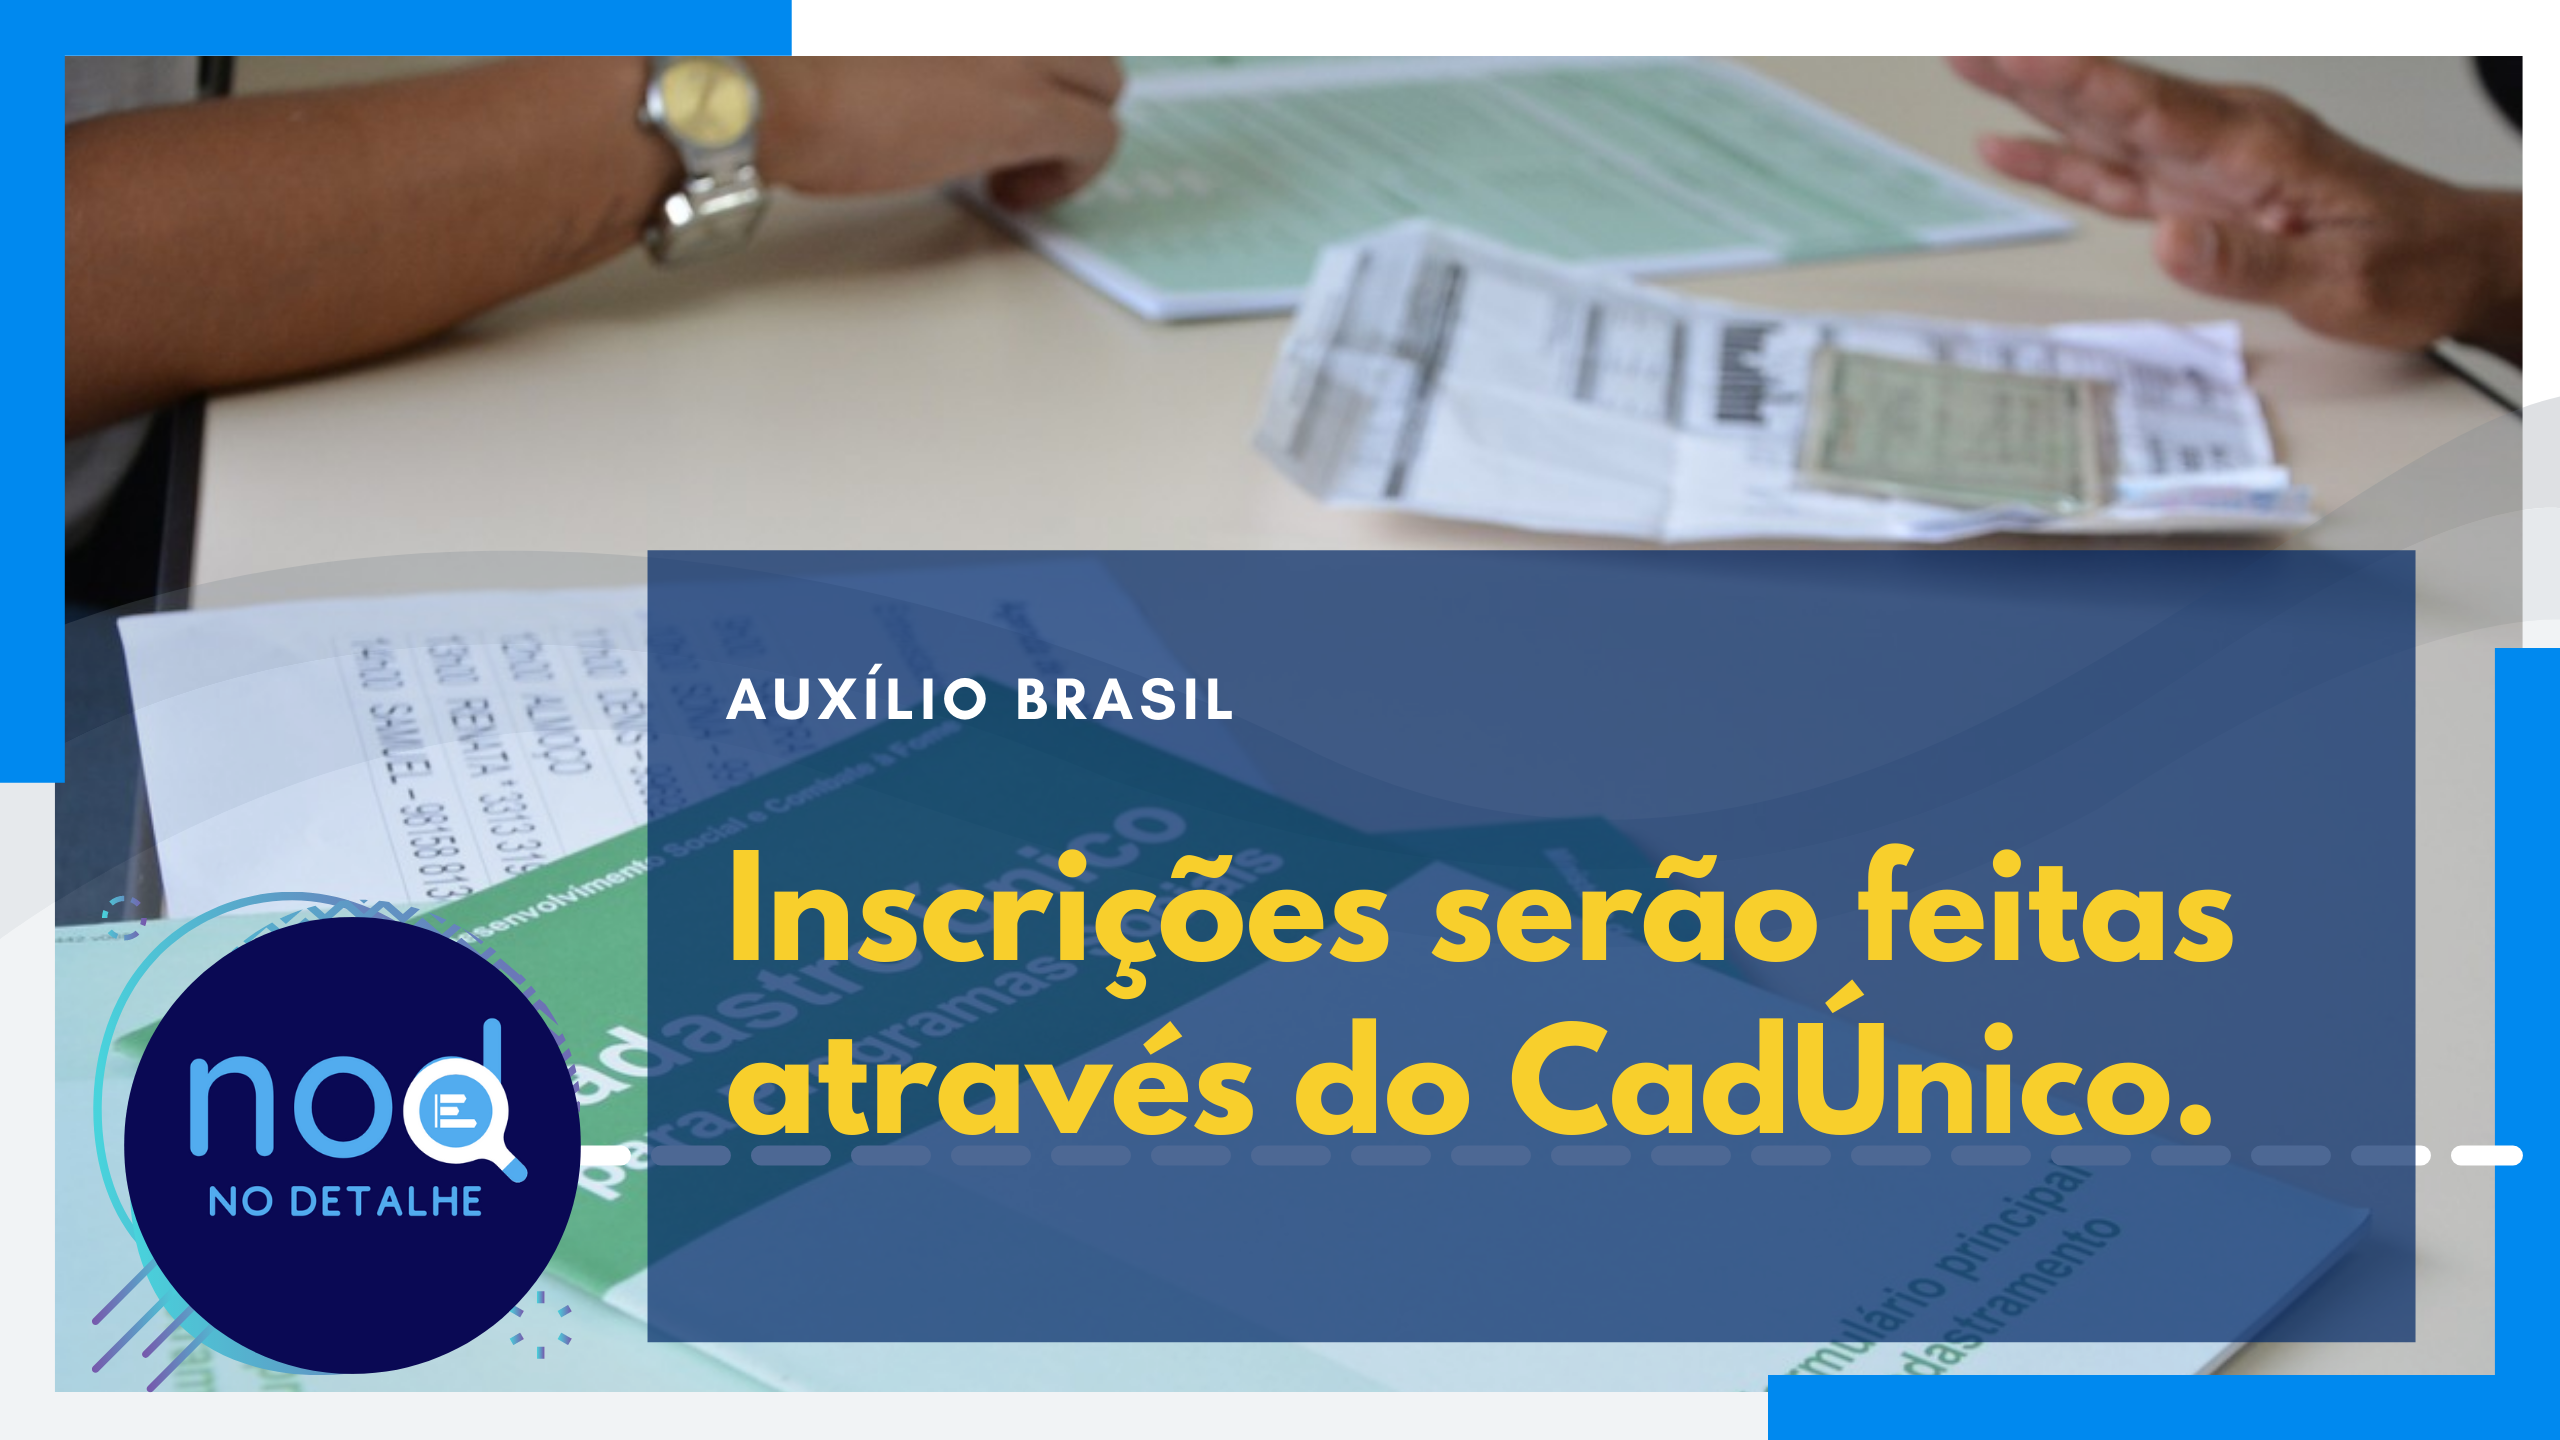 Inscrições no Auxílio Brasil serão feitas via CadÚnico. Veja como funcionará